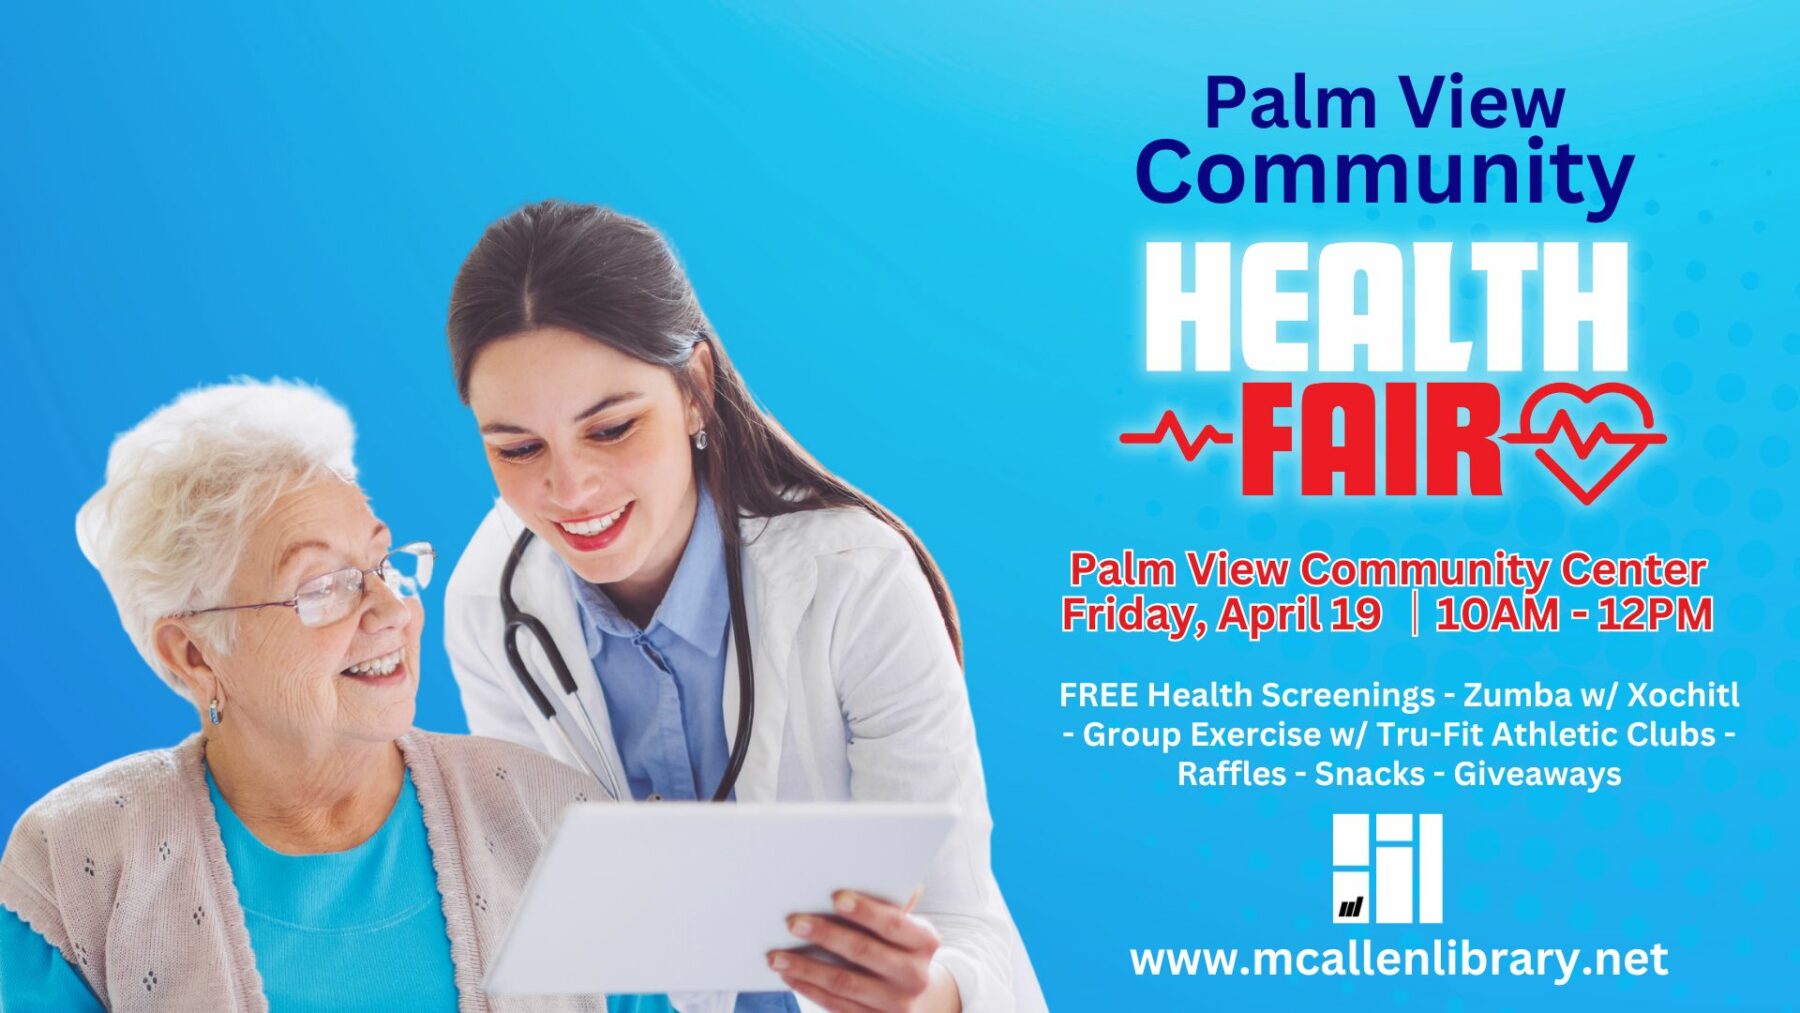 Second Annual Palm View Community Health Fair